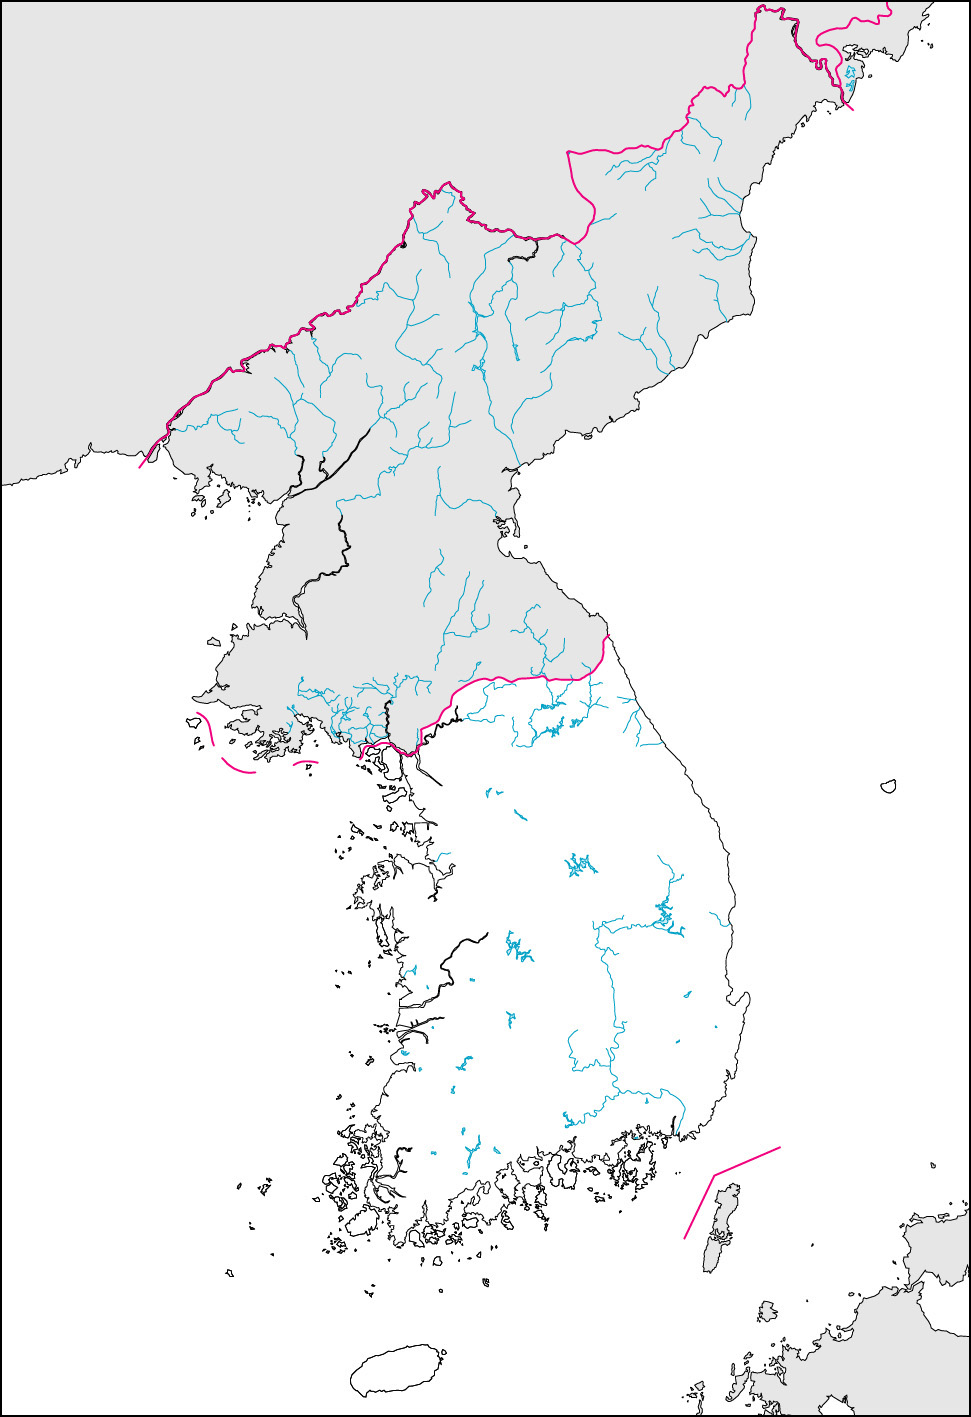 韓国白地図(国境記載)の画像